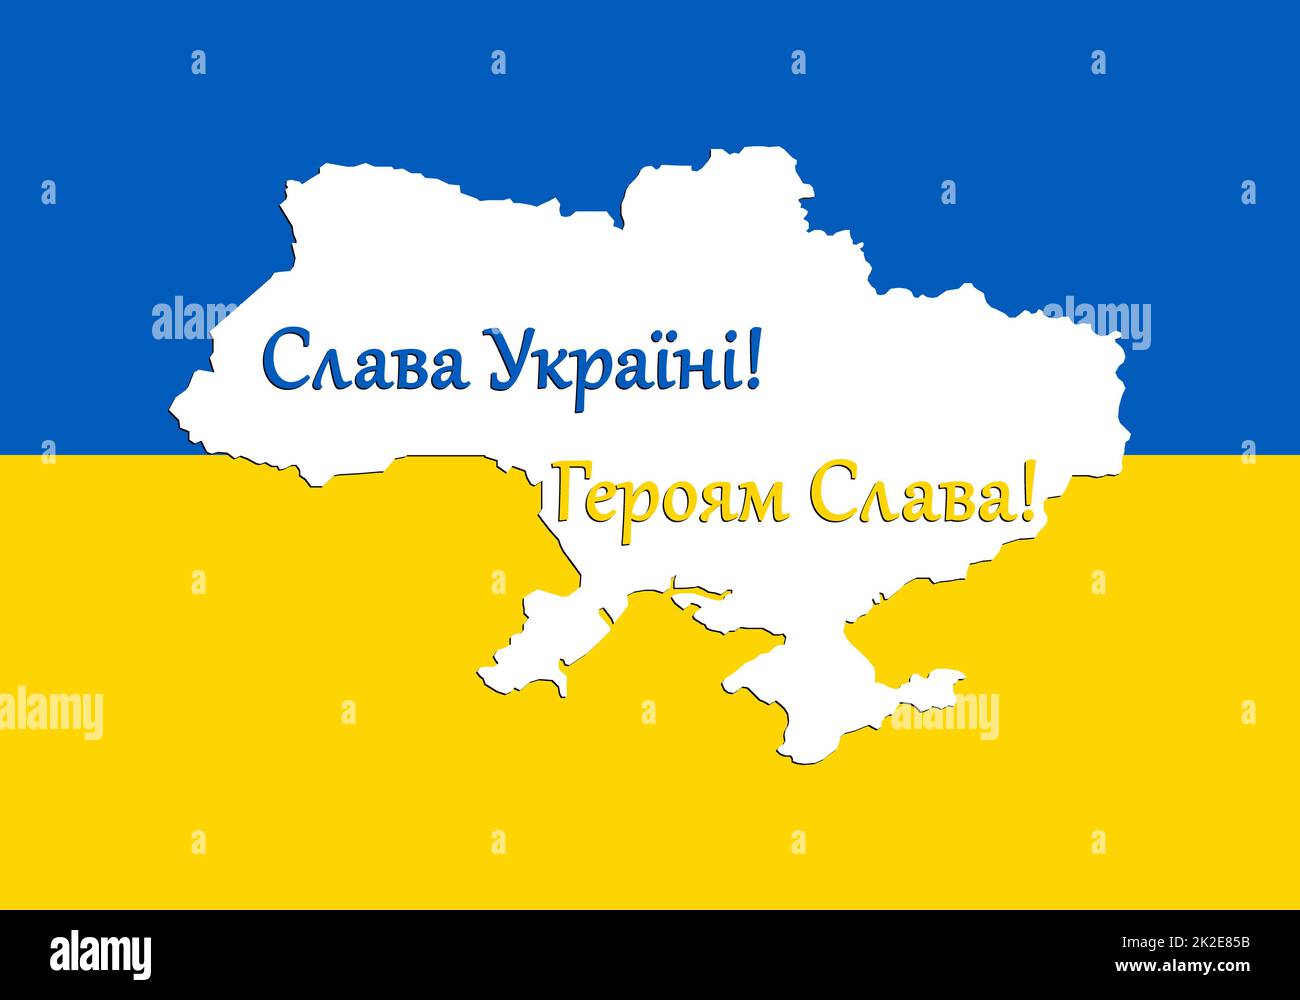 Drapeau Natioanl et carte territoire de l'Ukraine avec texte patriotique ukrainien. Etat indépendant, couleur d'état, jaune-bleu ukrainien. La tension de la guerre. Aimez votre pays, défendez votre pays. Banque D'Images